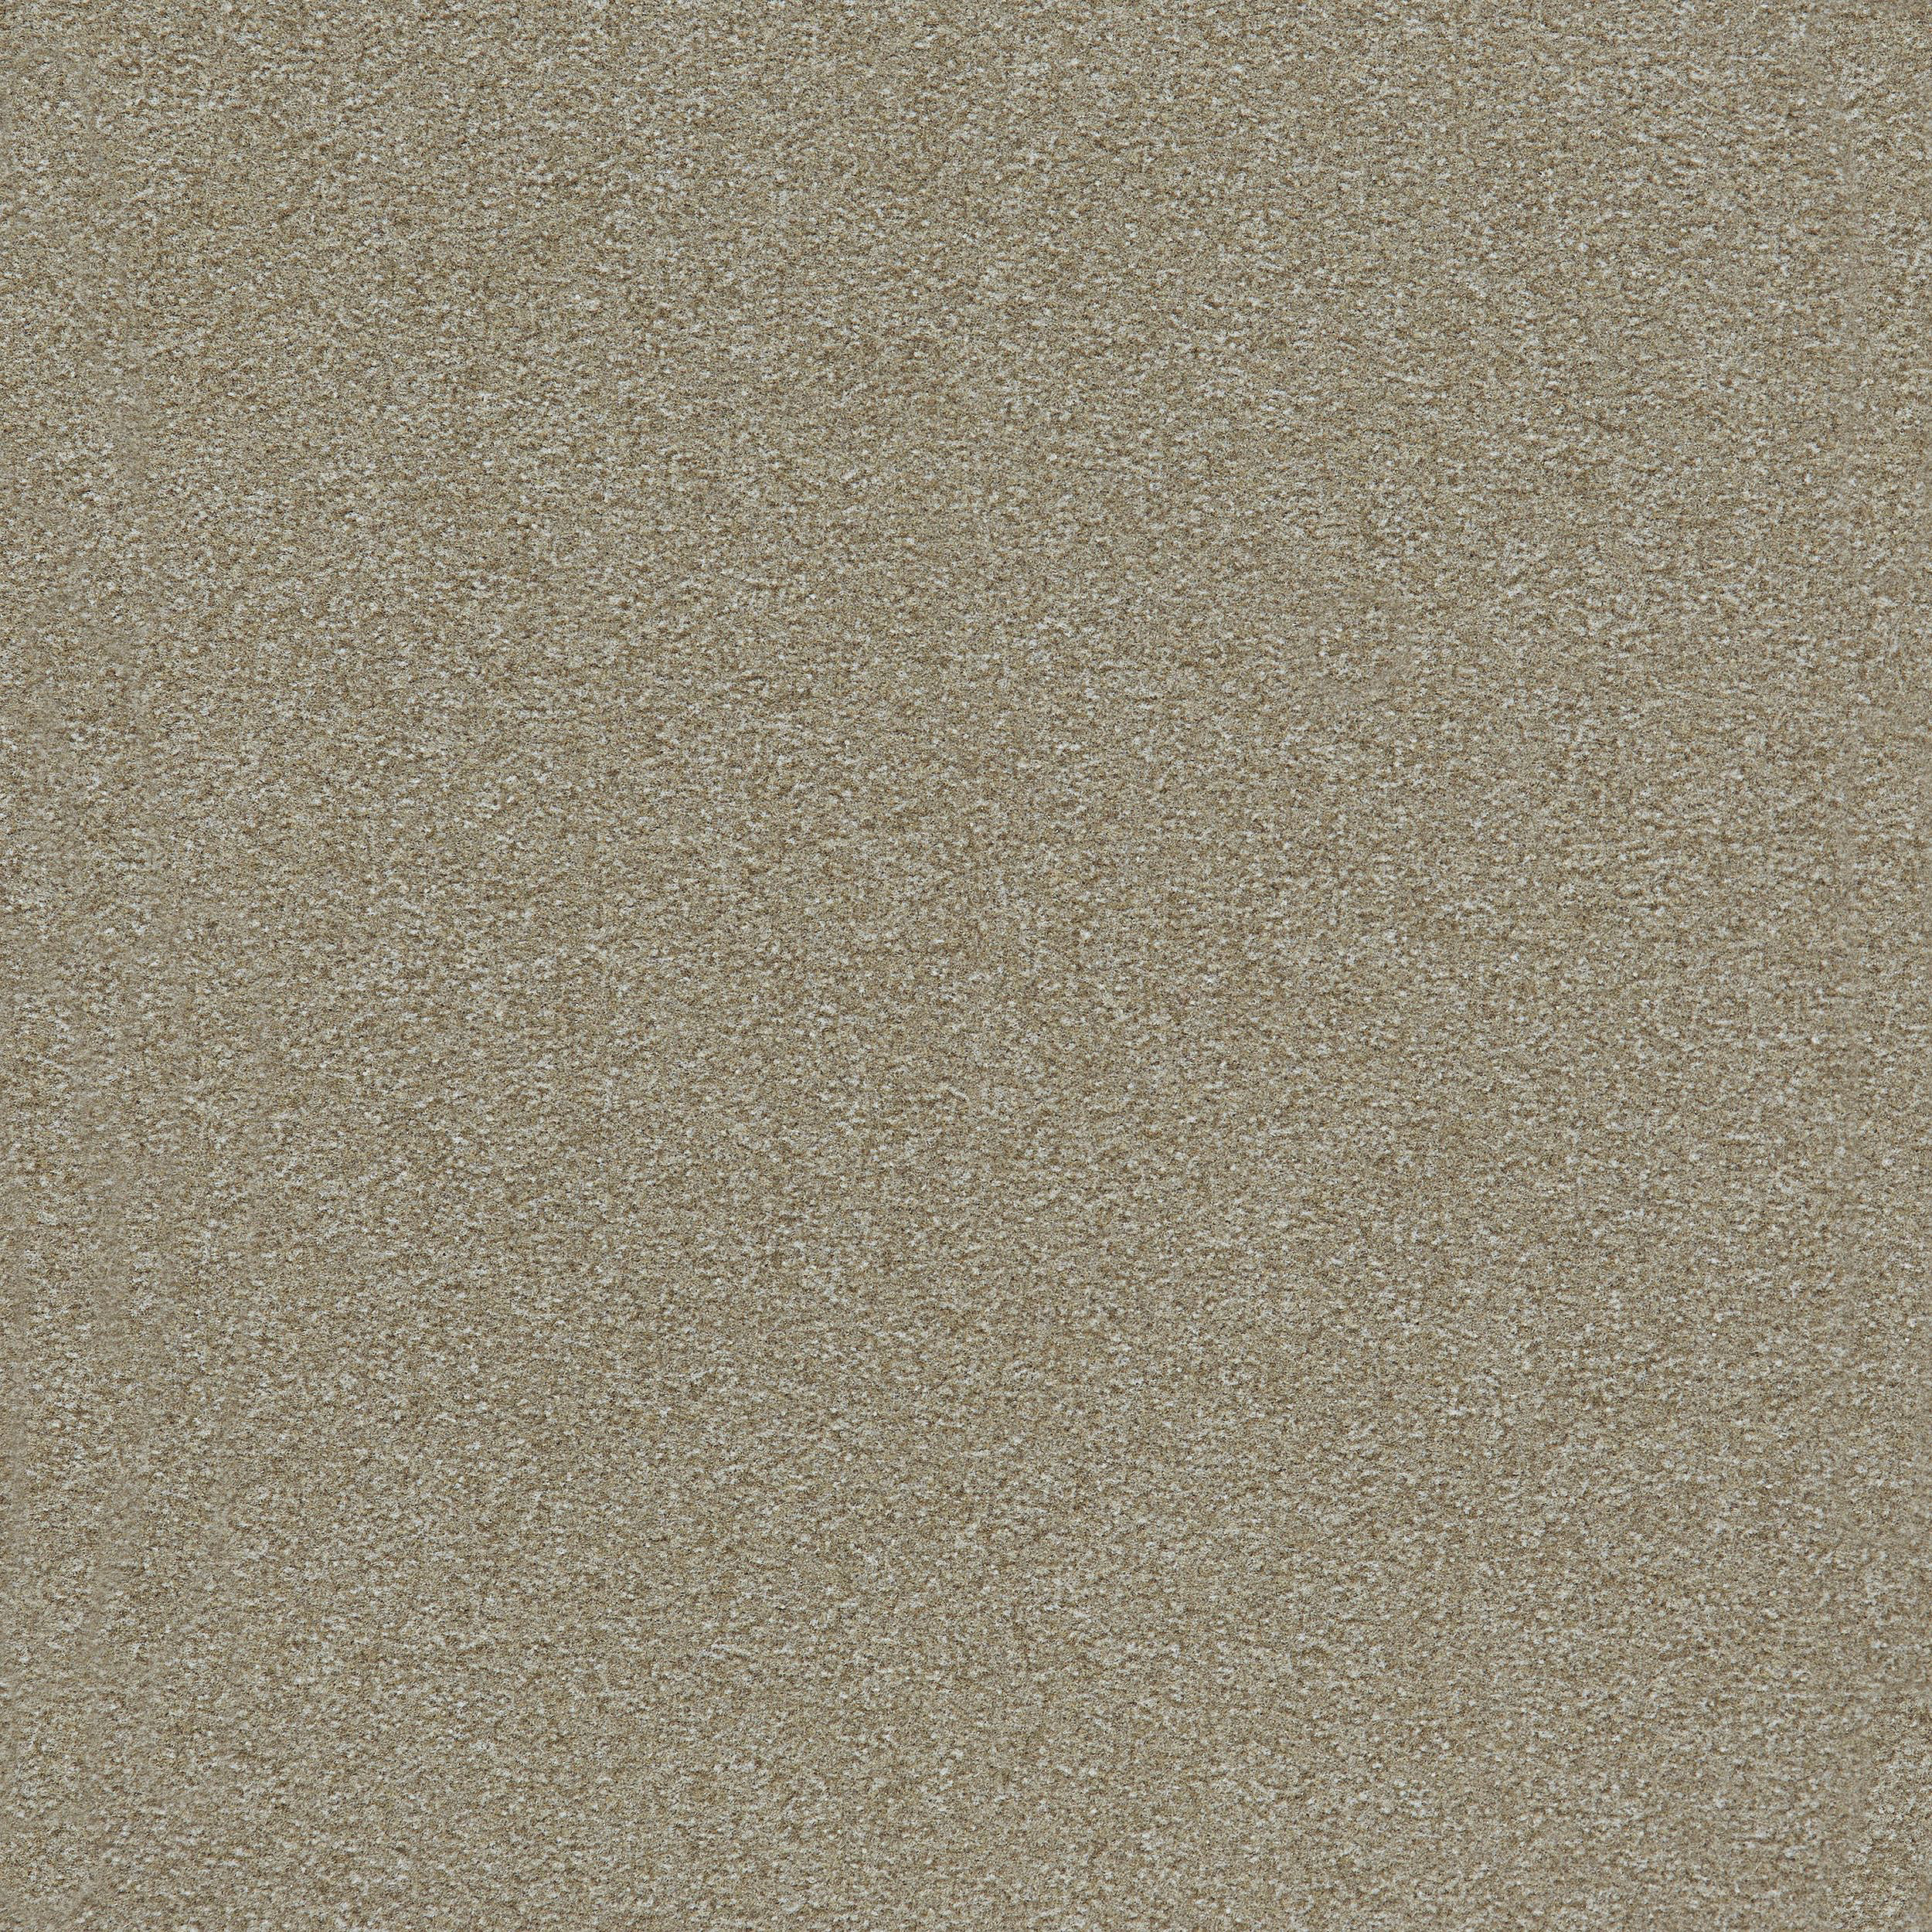 Heuga 725 Carpet Tile In Oyster número de imagen 9